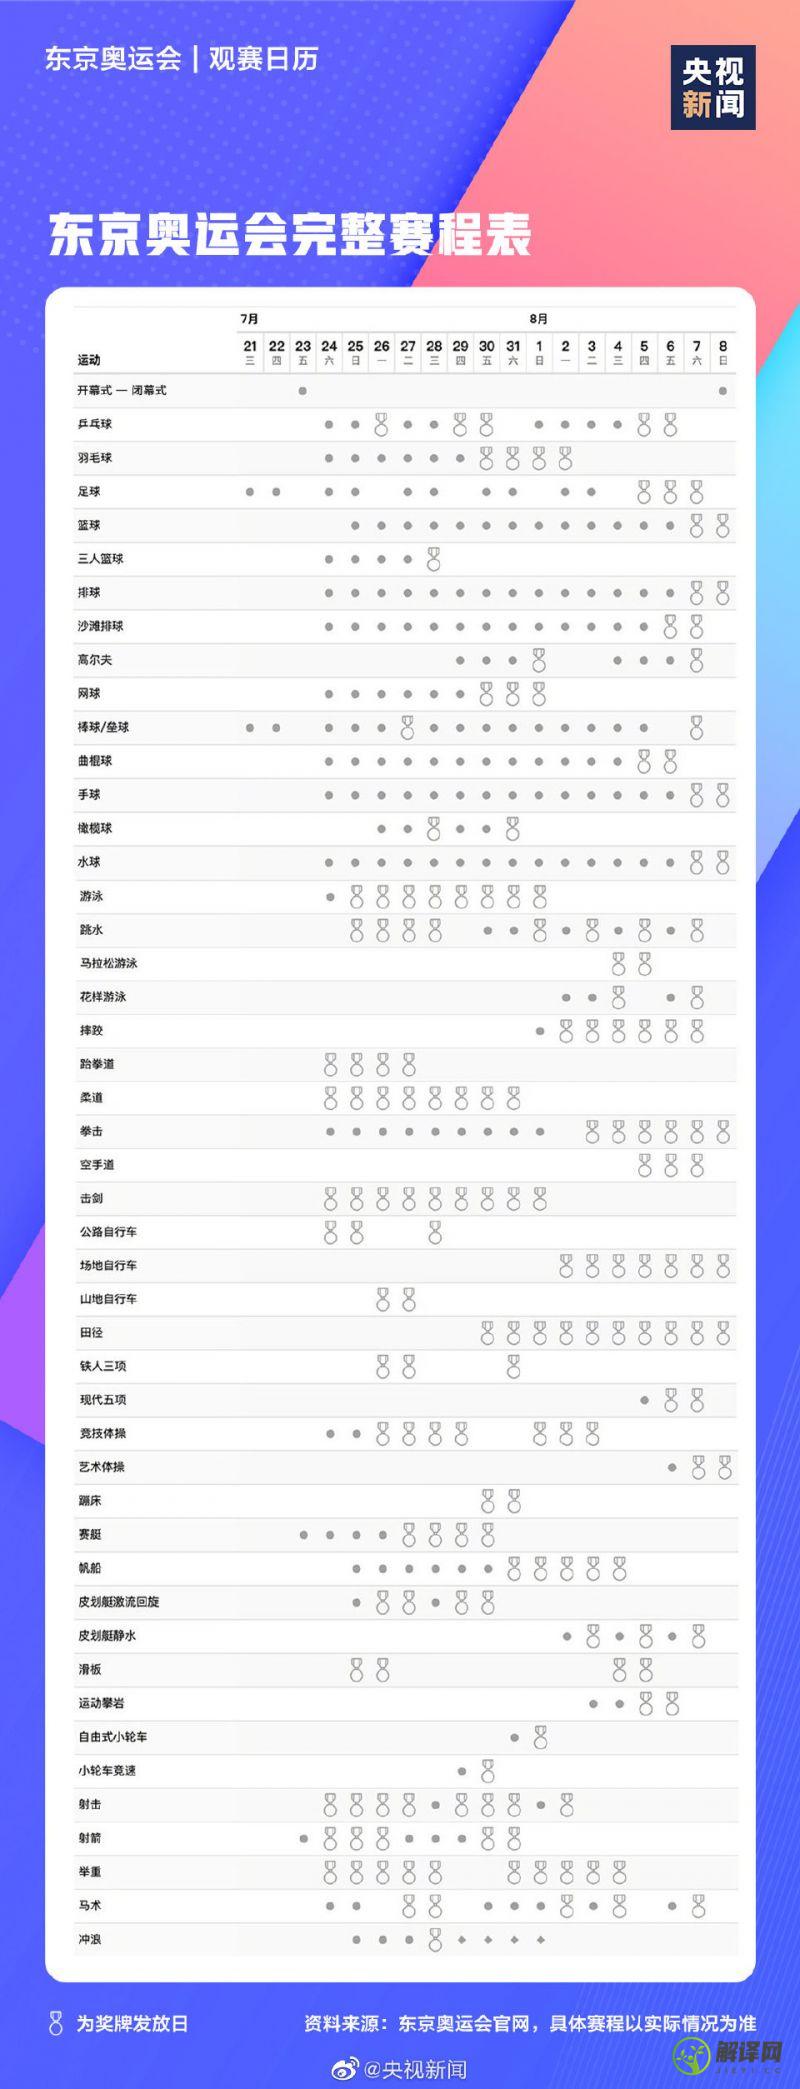 东京奥运会2021开幕时间以及赛程表（完整版）